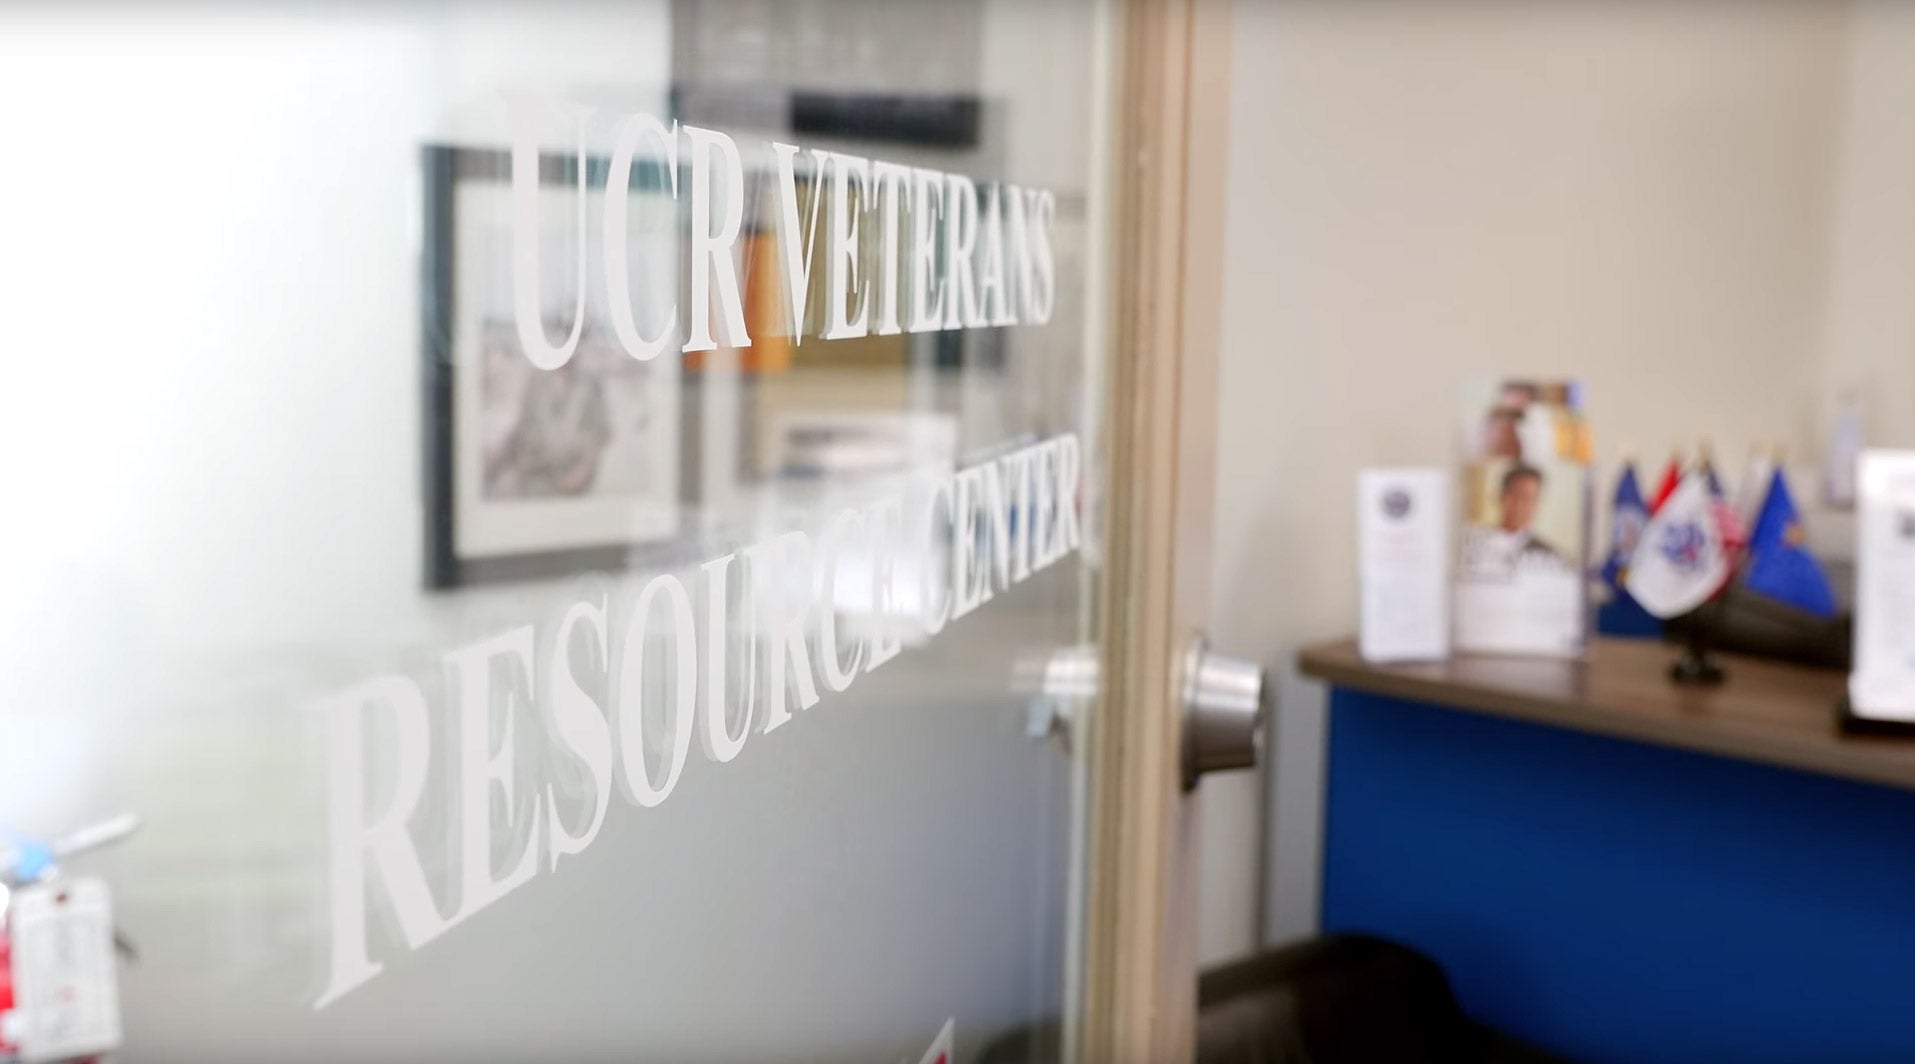 An open door welcomes visitors to UCR's Veterans Resource Center. 